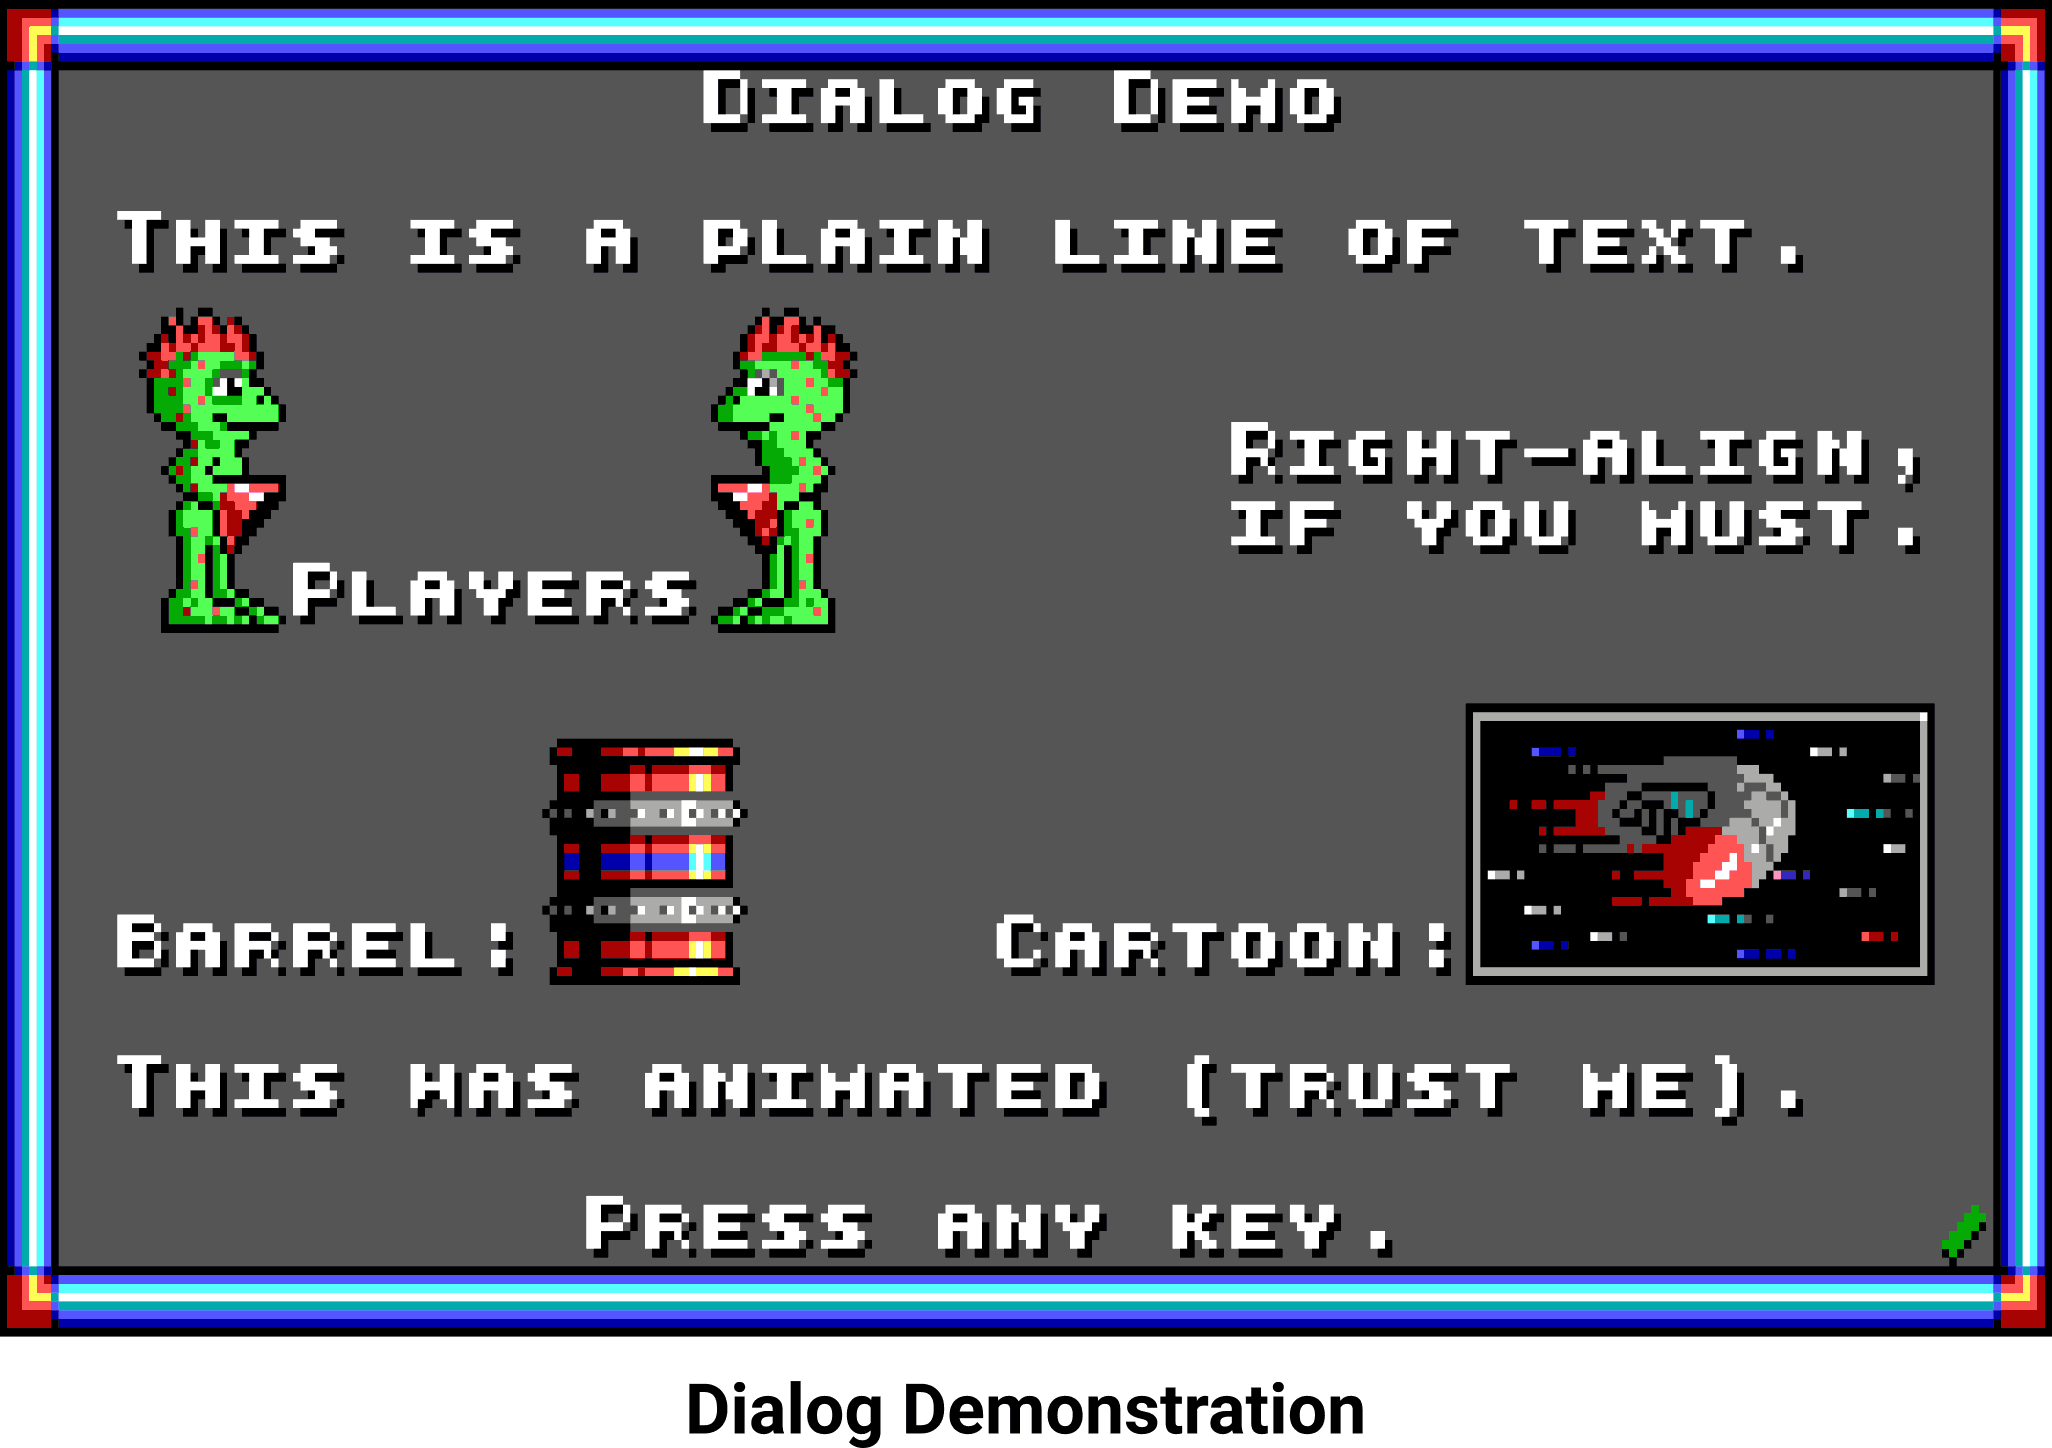 Dialog demo.